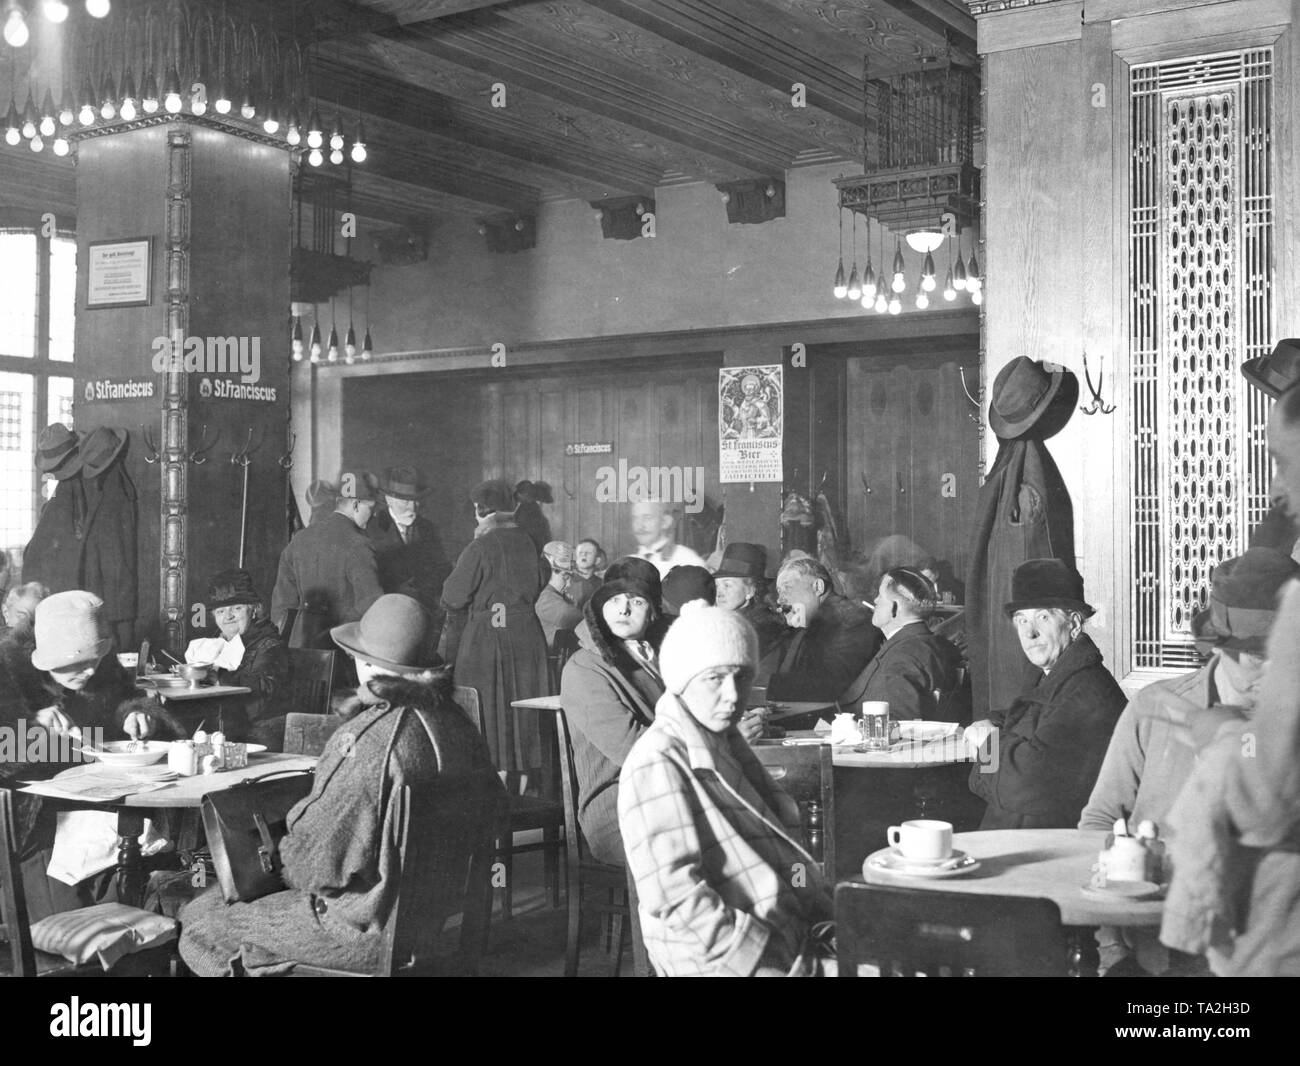 Die aschinger Restaurant, Berlin - Historische: Restaurants, Deutschland. Die aschinger Restaurant war berühmt in Berlin und weit darüber hinaus für die brotkörbe auf jedem Tisch, der von den Gästen kostenlos genutzt werden kann. Die aschinger in Berlin wurde 1892 gegründet und wurde vor allem für seine grosse stehende Bier Hallen bekannt. Der erste Store namens "Bierquelle" wurde am 1. September 1892 in die Neue Rossstrasse 4 geöffnet. Weitere Orte an belebten Orten wie Leipzig, Potsdamer Platz und der Friedrichstraße, Rosenthaler Platz, Alexanderplatz, Hackescher Markt und Werderschen Markt. Stockfoto